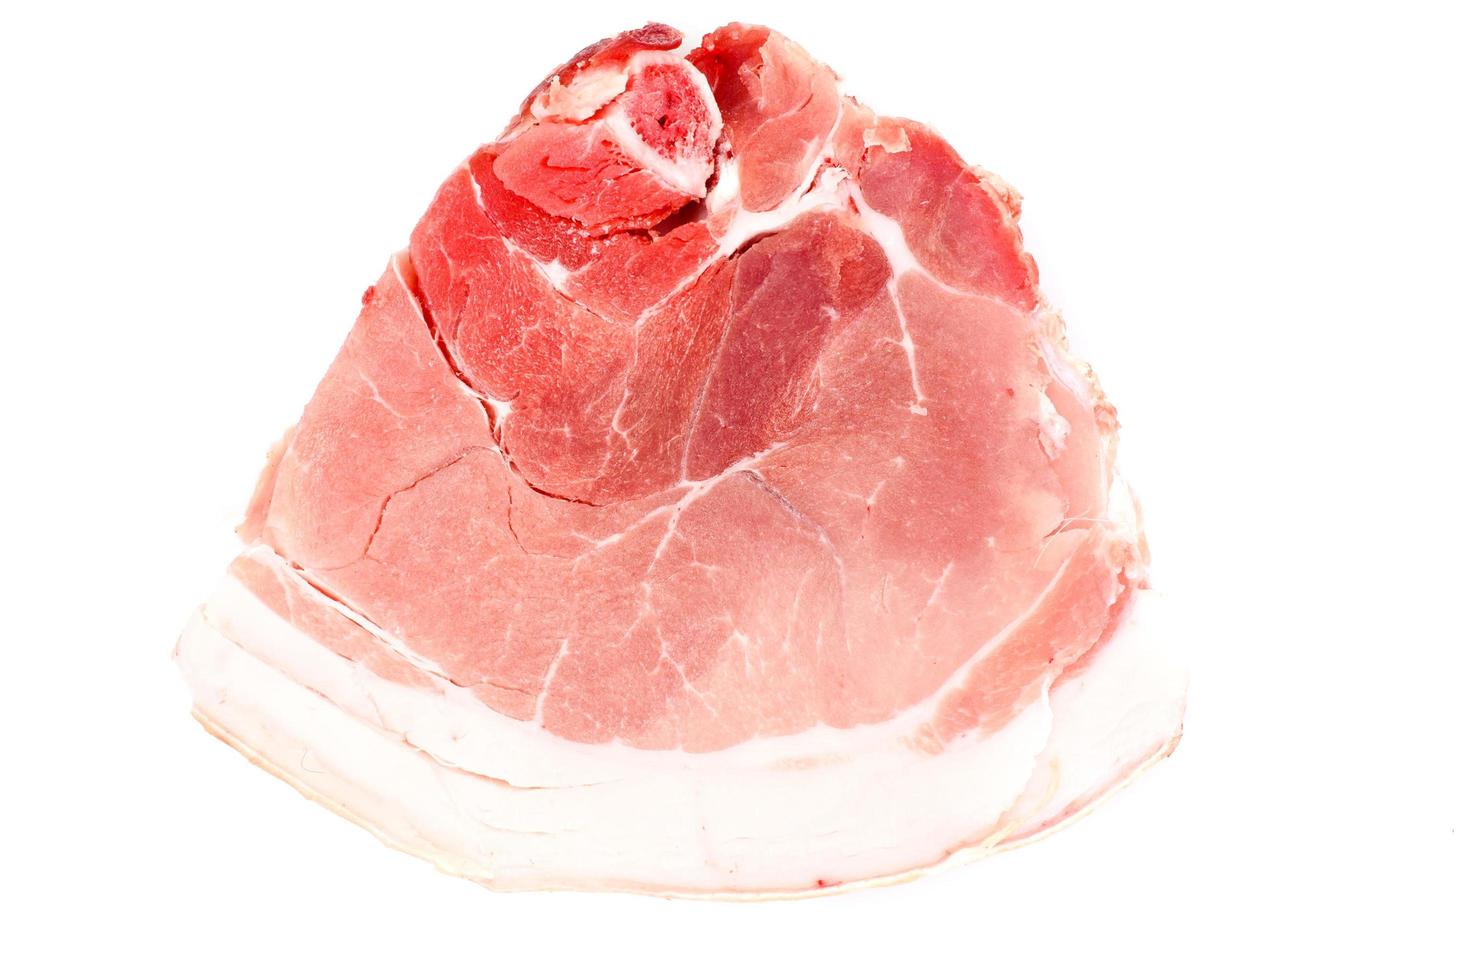 Trozo de carne de cerdo cruda fresca, carne aislado sobre fondo blanco. foto